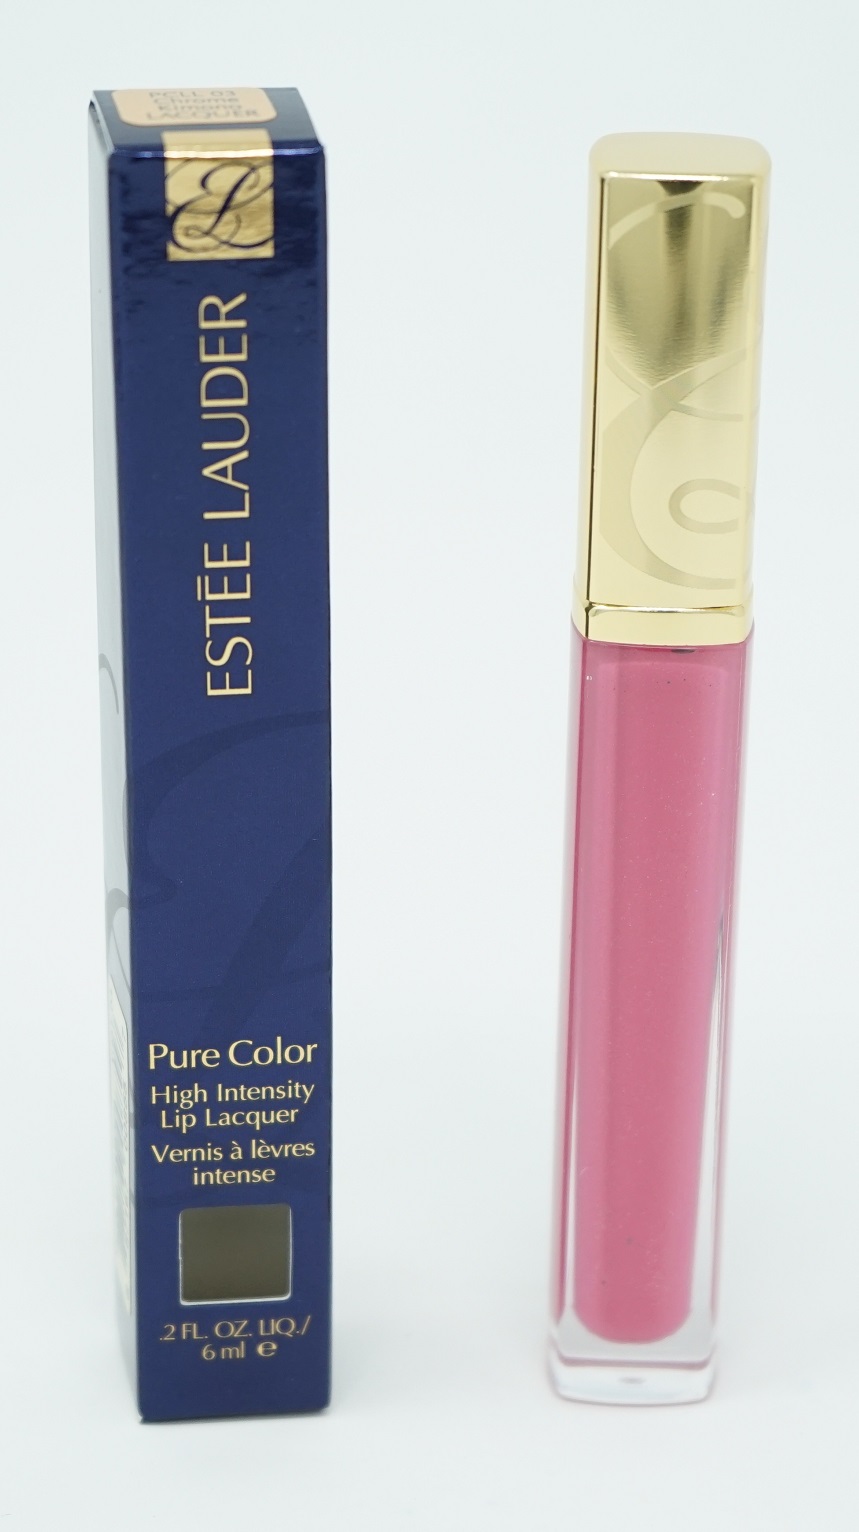 Estee Lauder Pure Color High Intensity Lip Lacquer PCLL 03 Chrome Kimono